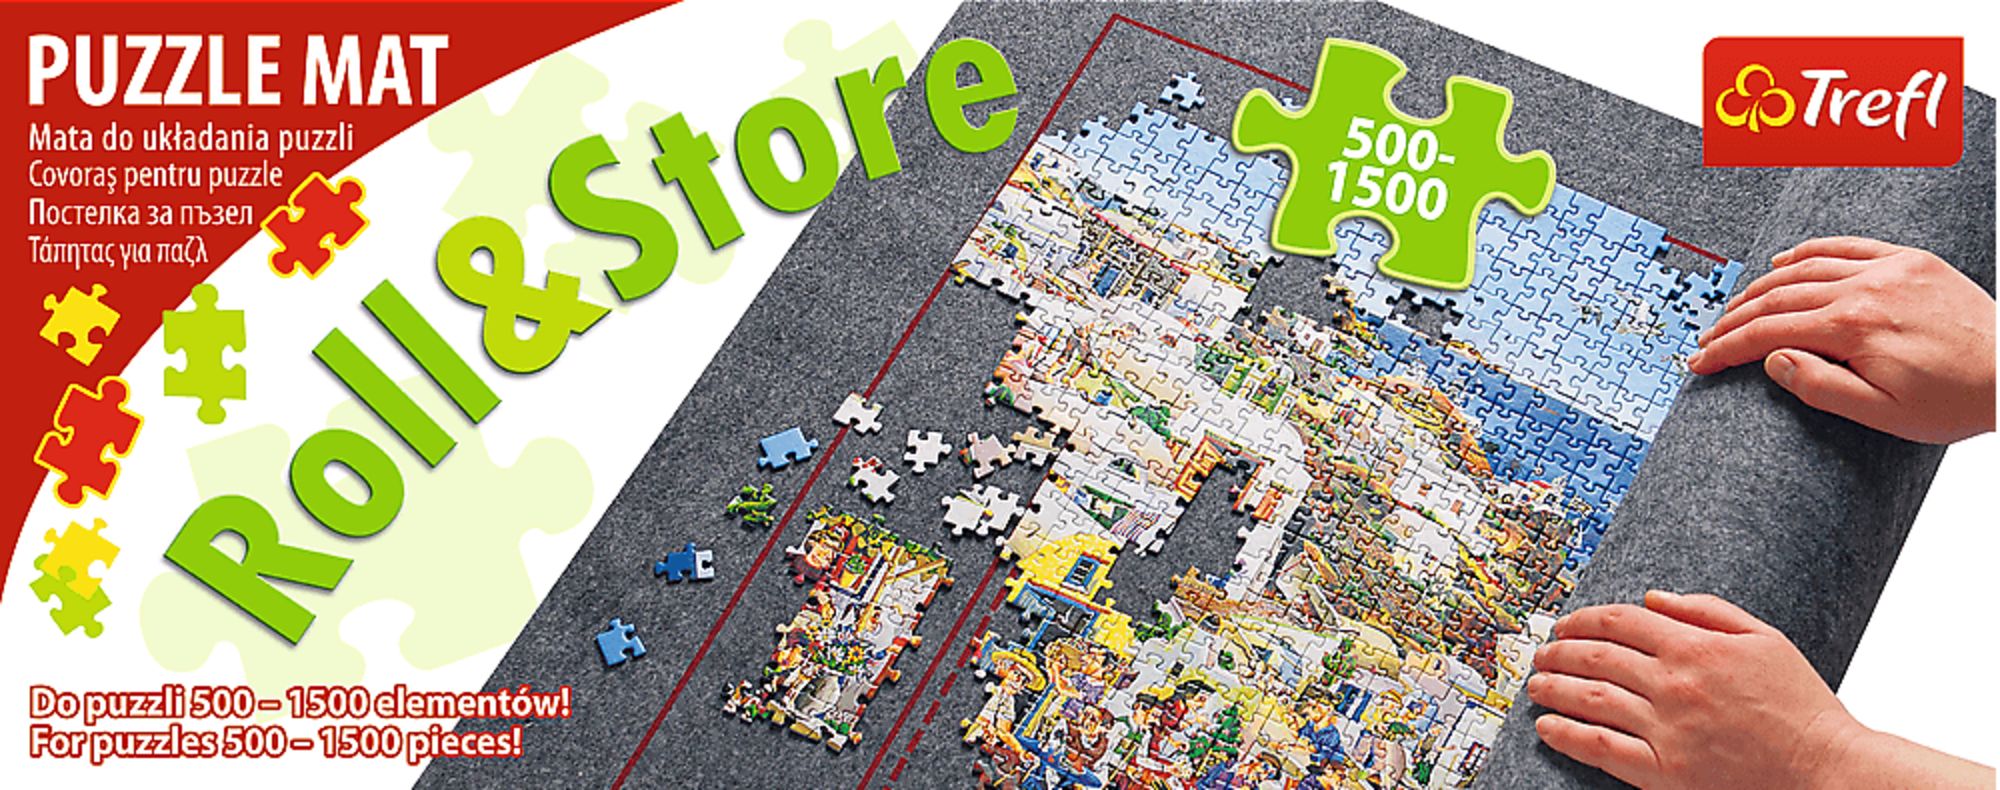 Puzzle Matte Trefl 500-1500 Teile' kaufen - Spielwaren